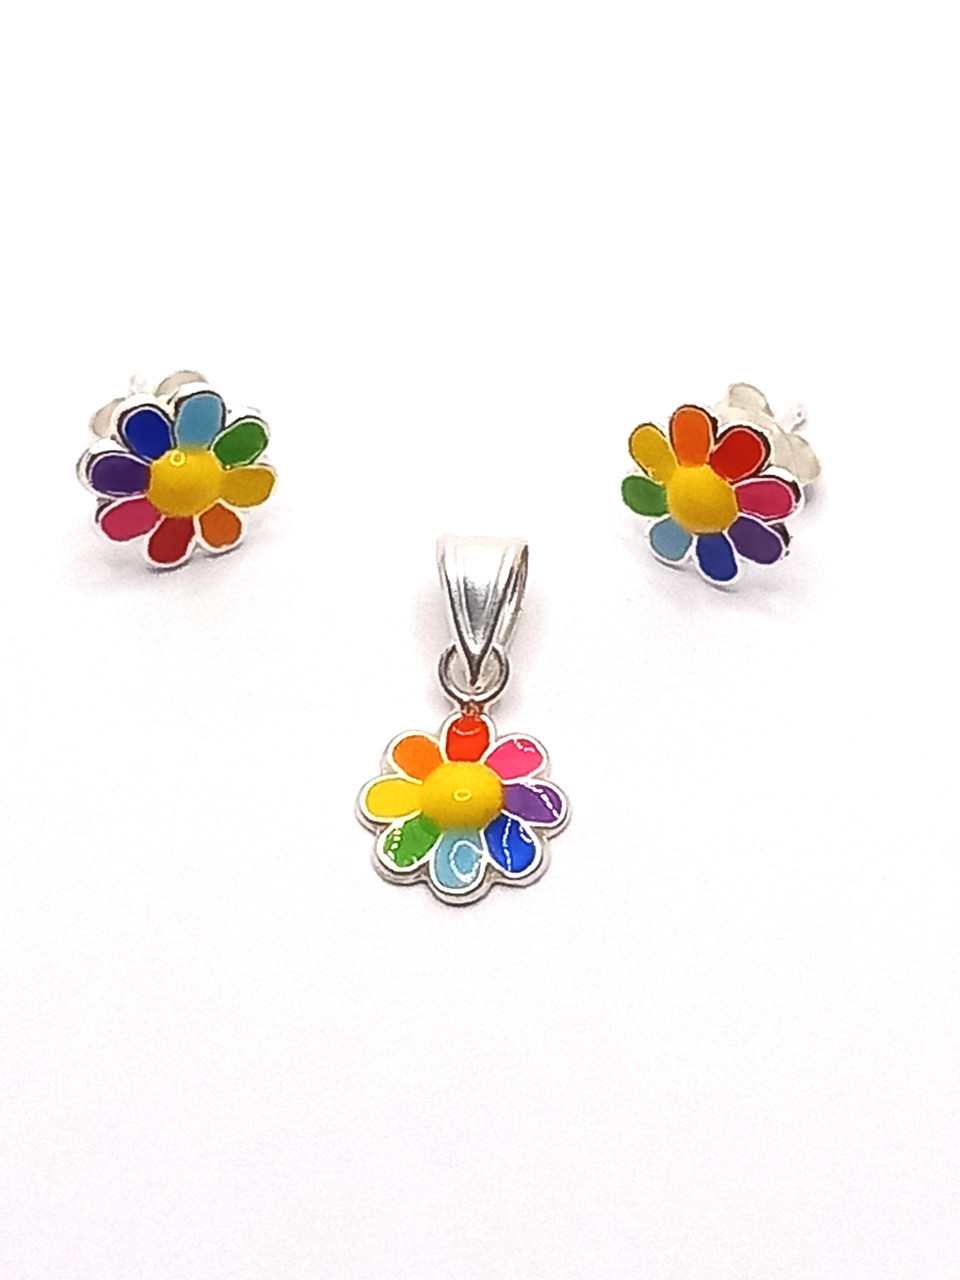 Set cu flori multicolore din argint 925, format din pandantiv cu surub.